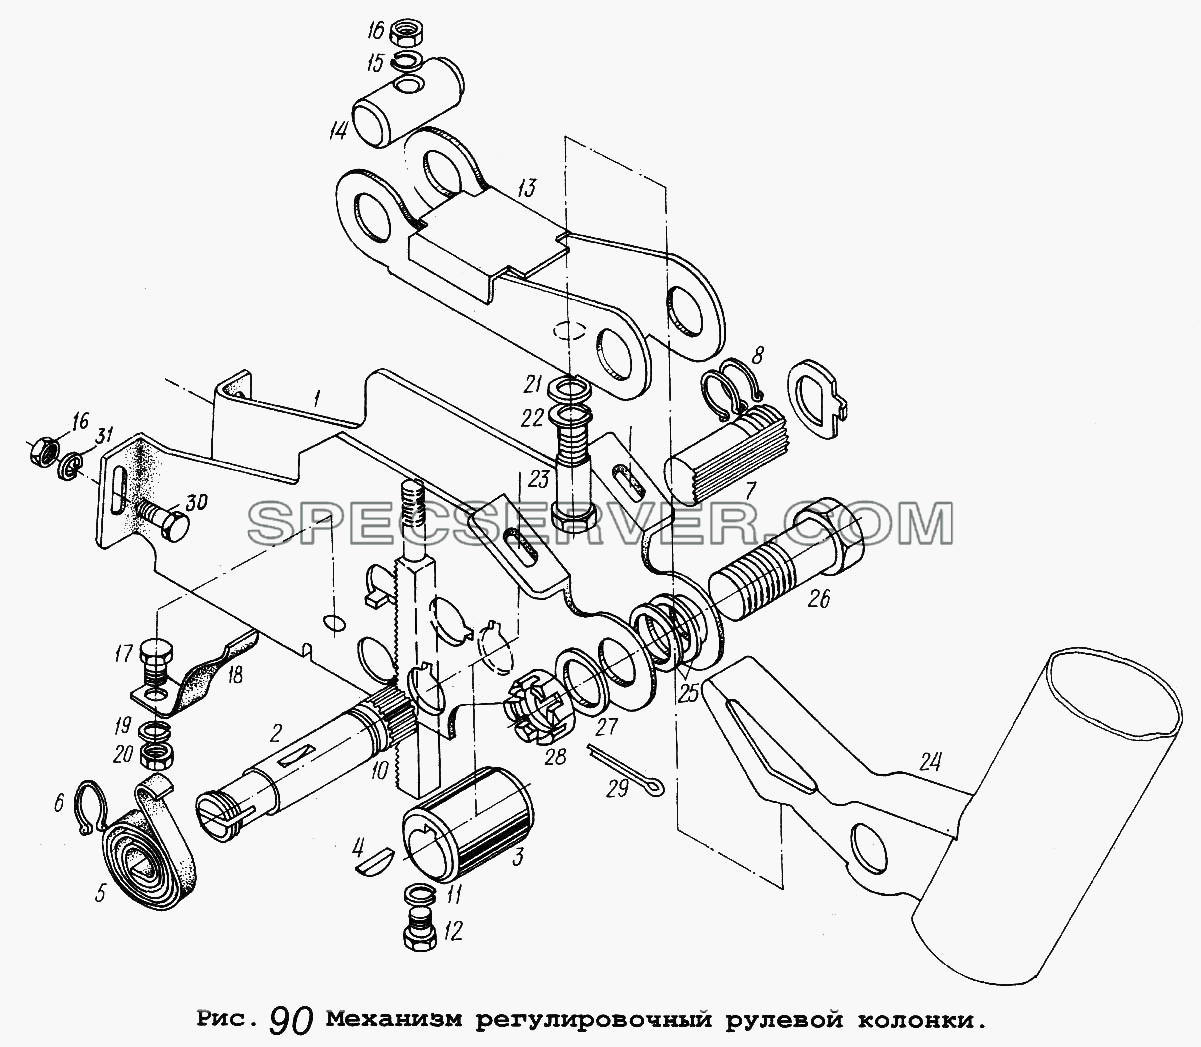 Механизм регулировочный рулевой колонки для МАЗ-54323 (список запасных частей)